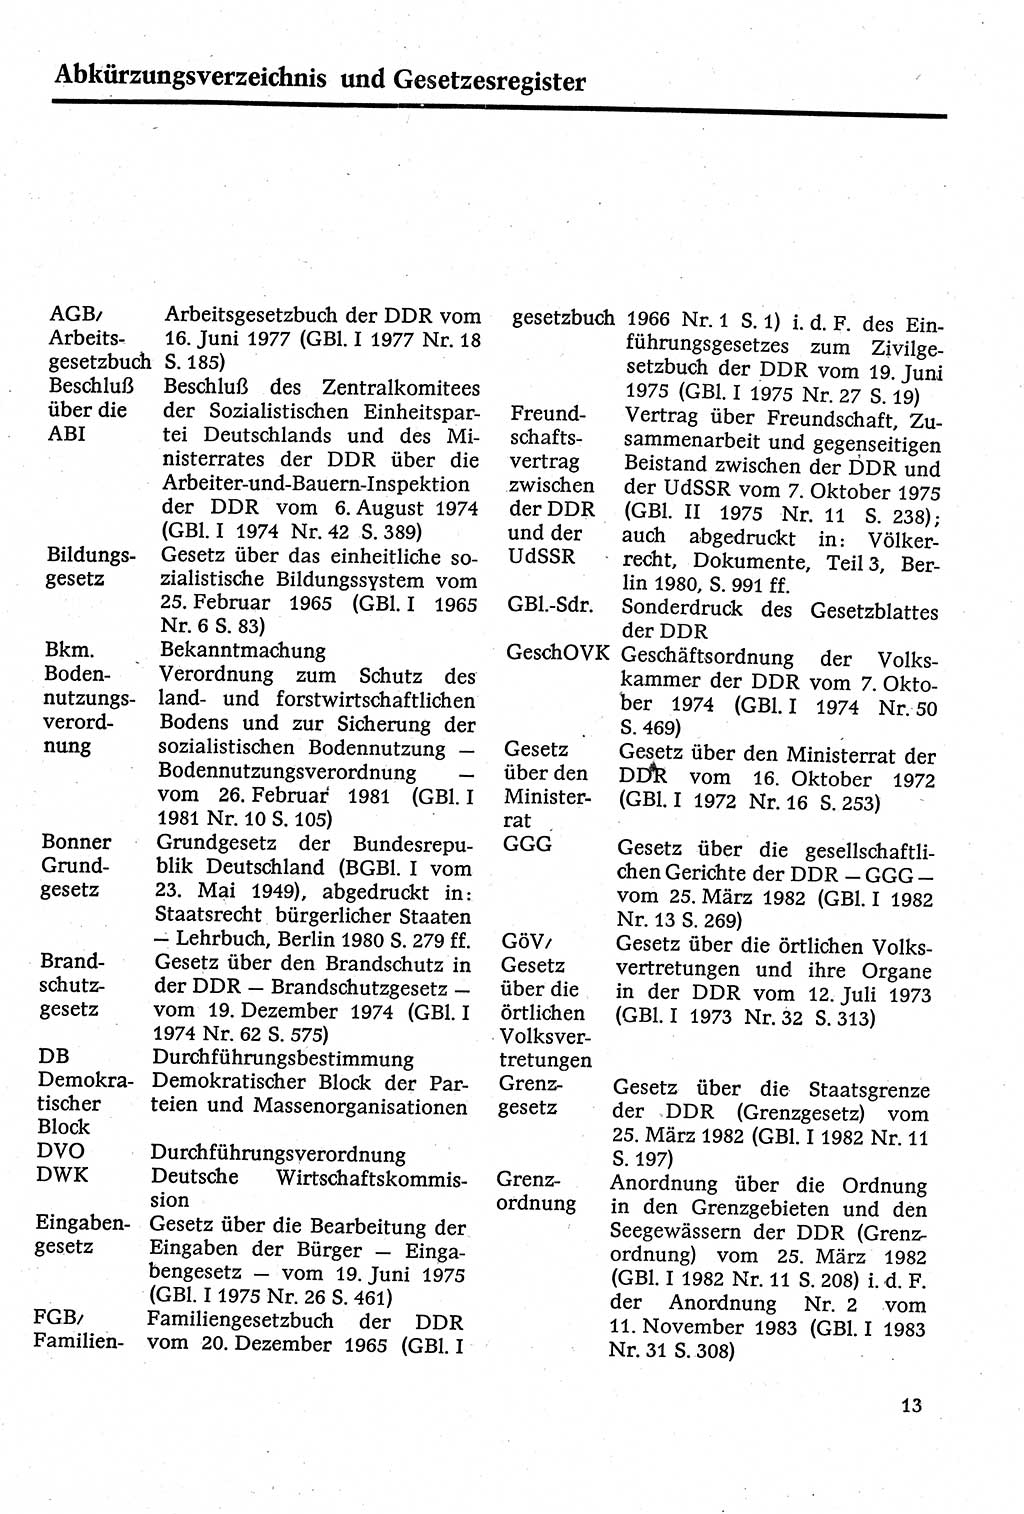 Staatsrecht der DDR [Deutsche Demokratische Republik (DDR)], Lehrbuch 1984, Seite 13 (St.-R. DDR Lb. 1984, S. 13)